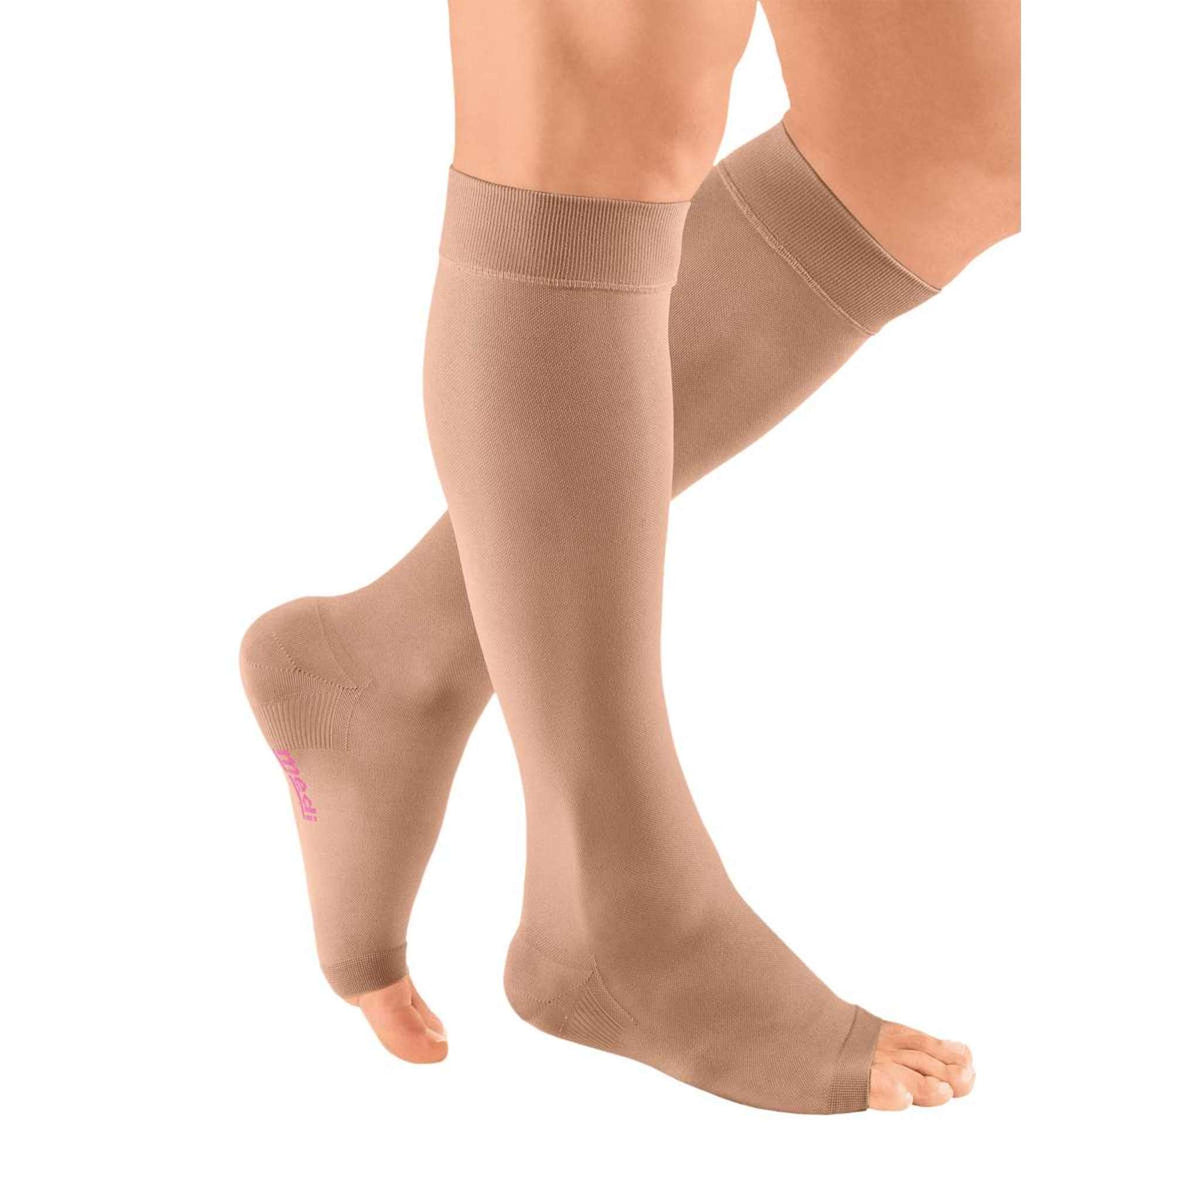 Dr Scholl Medi Qtto Open Toe Lymph Care Compression Stockings